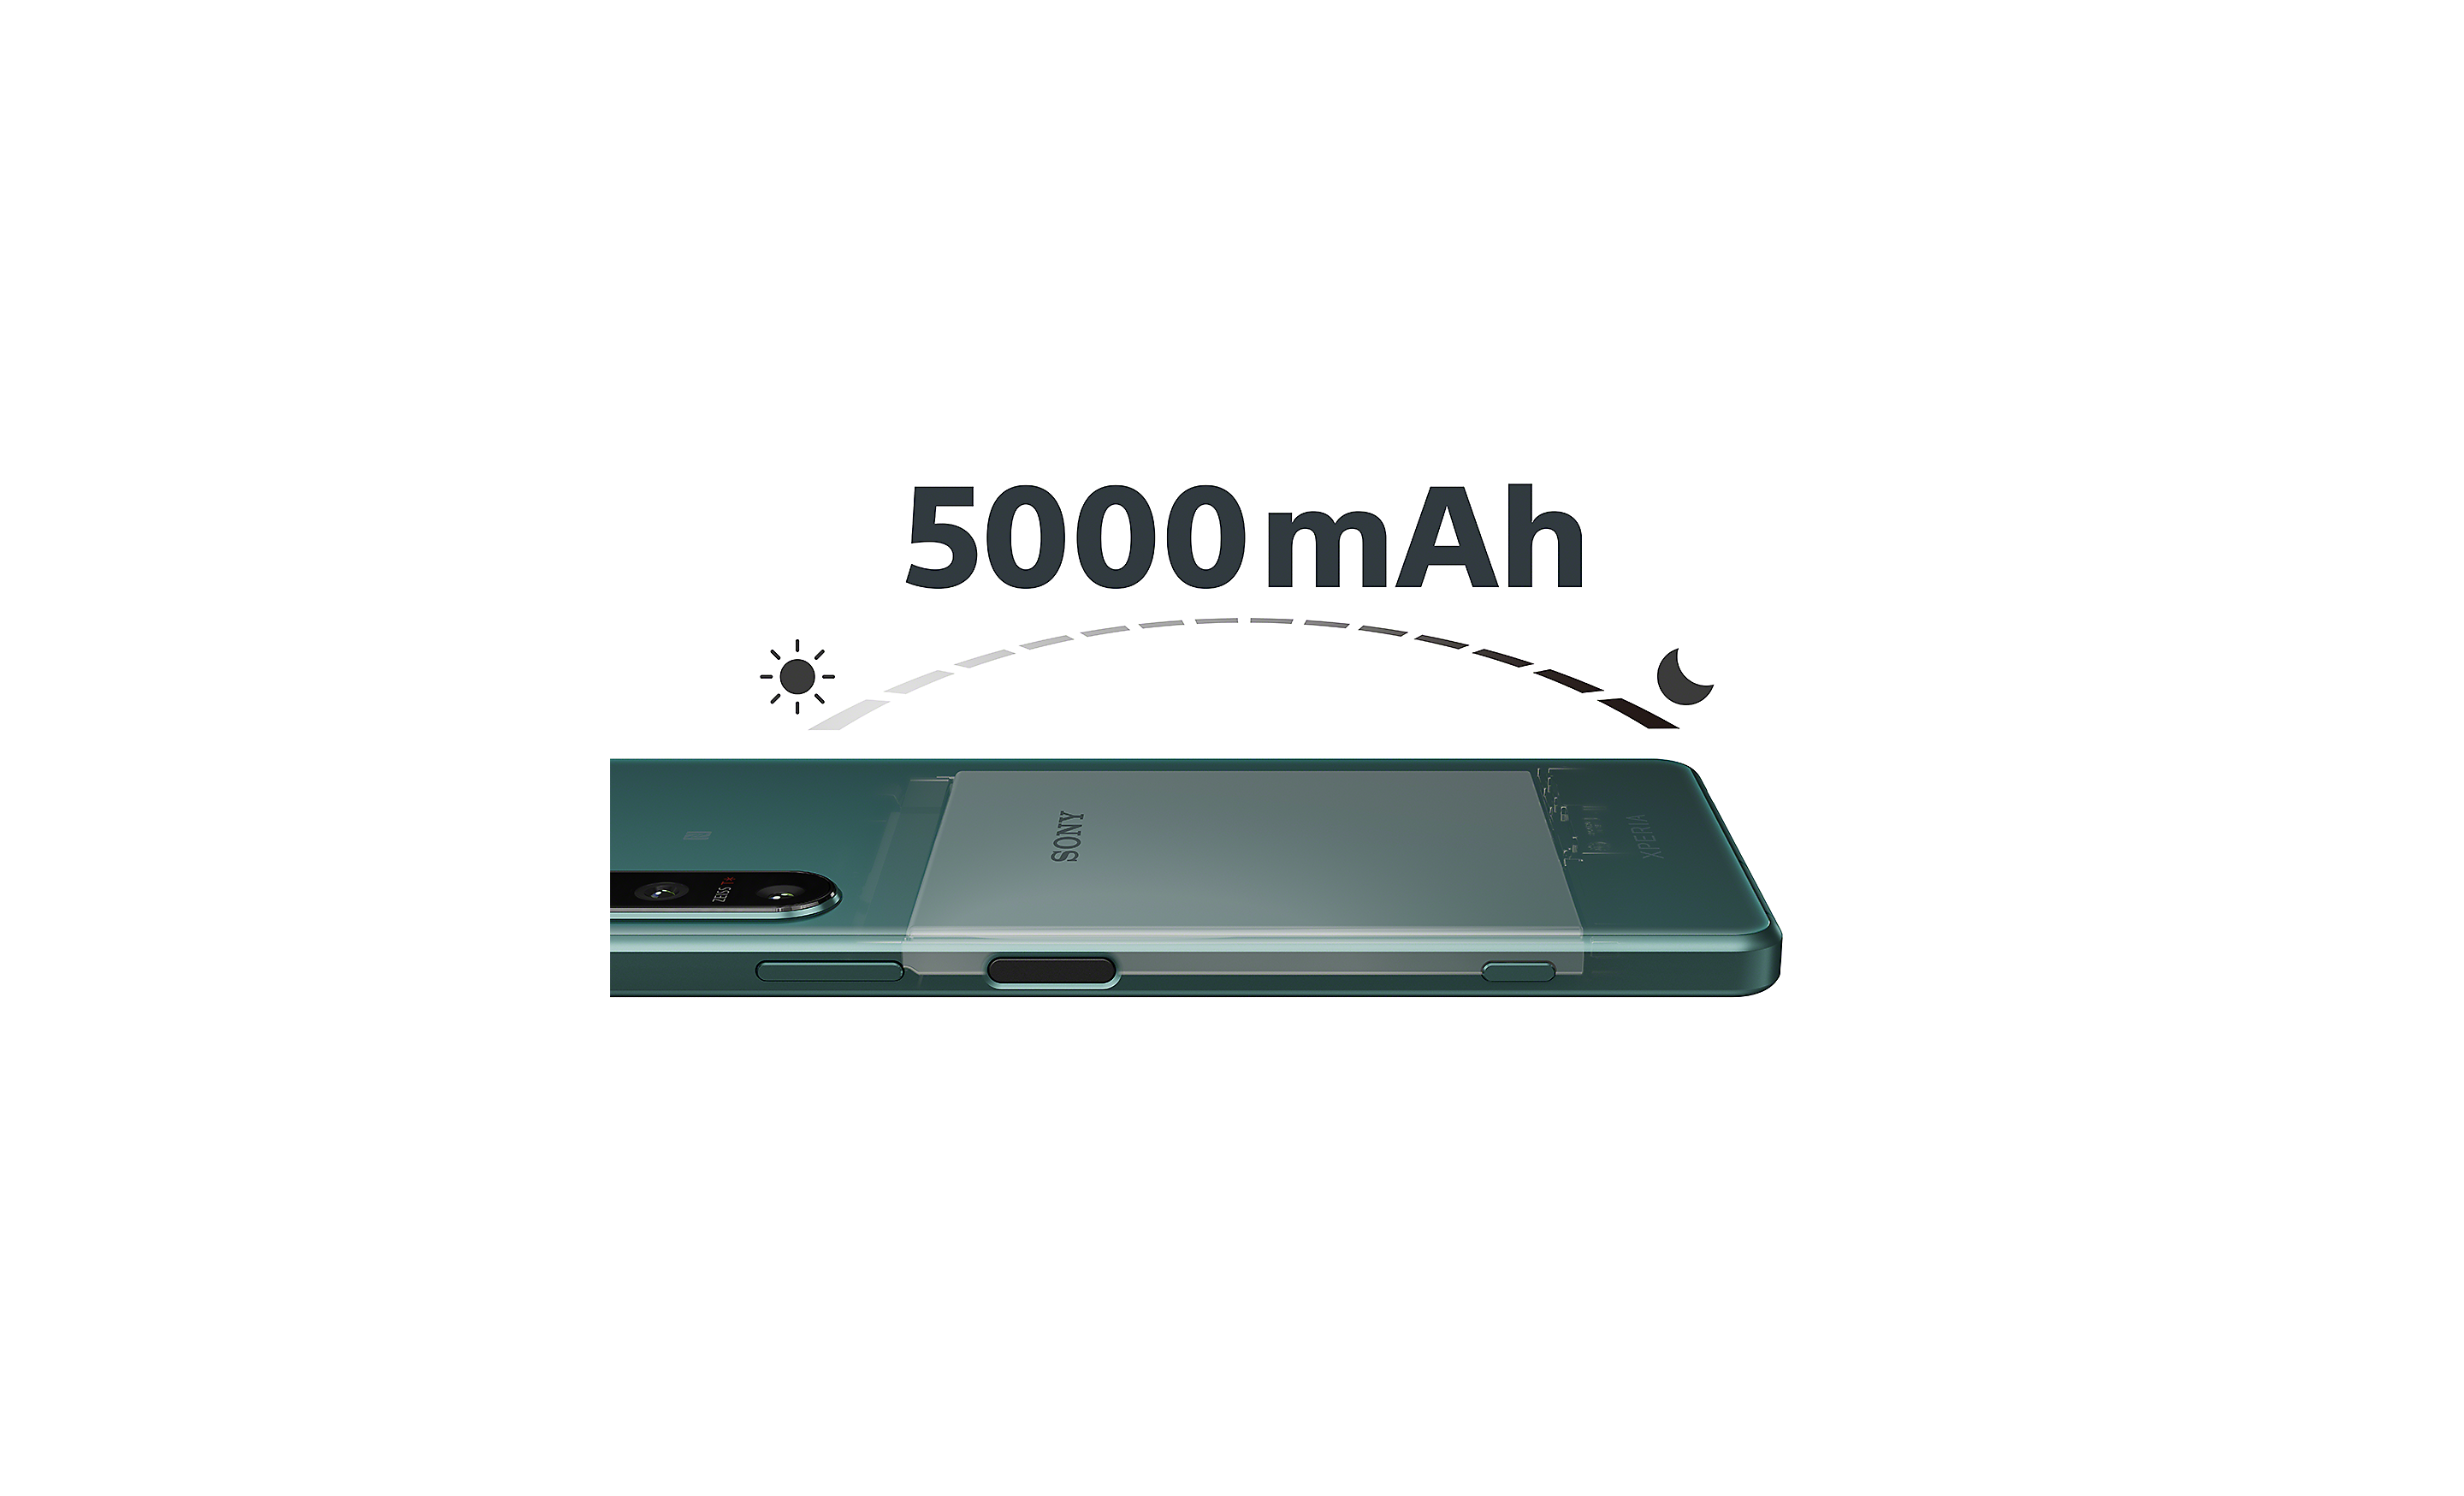 Rendgenska snimka uređaja Xperia 5 IV koja prikazuje veliku bateriju; vidimo i logotip za 5000 mAh i grafički prikaz prijelaza iz dana u noć